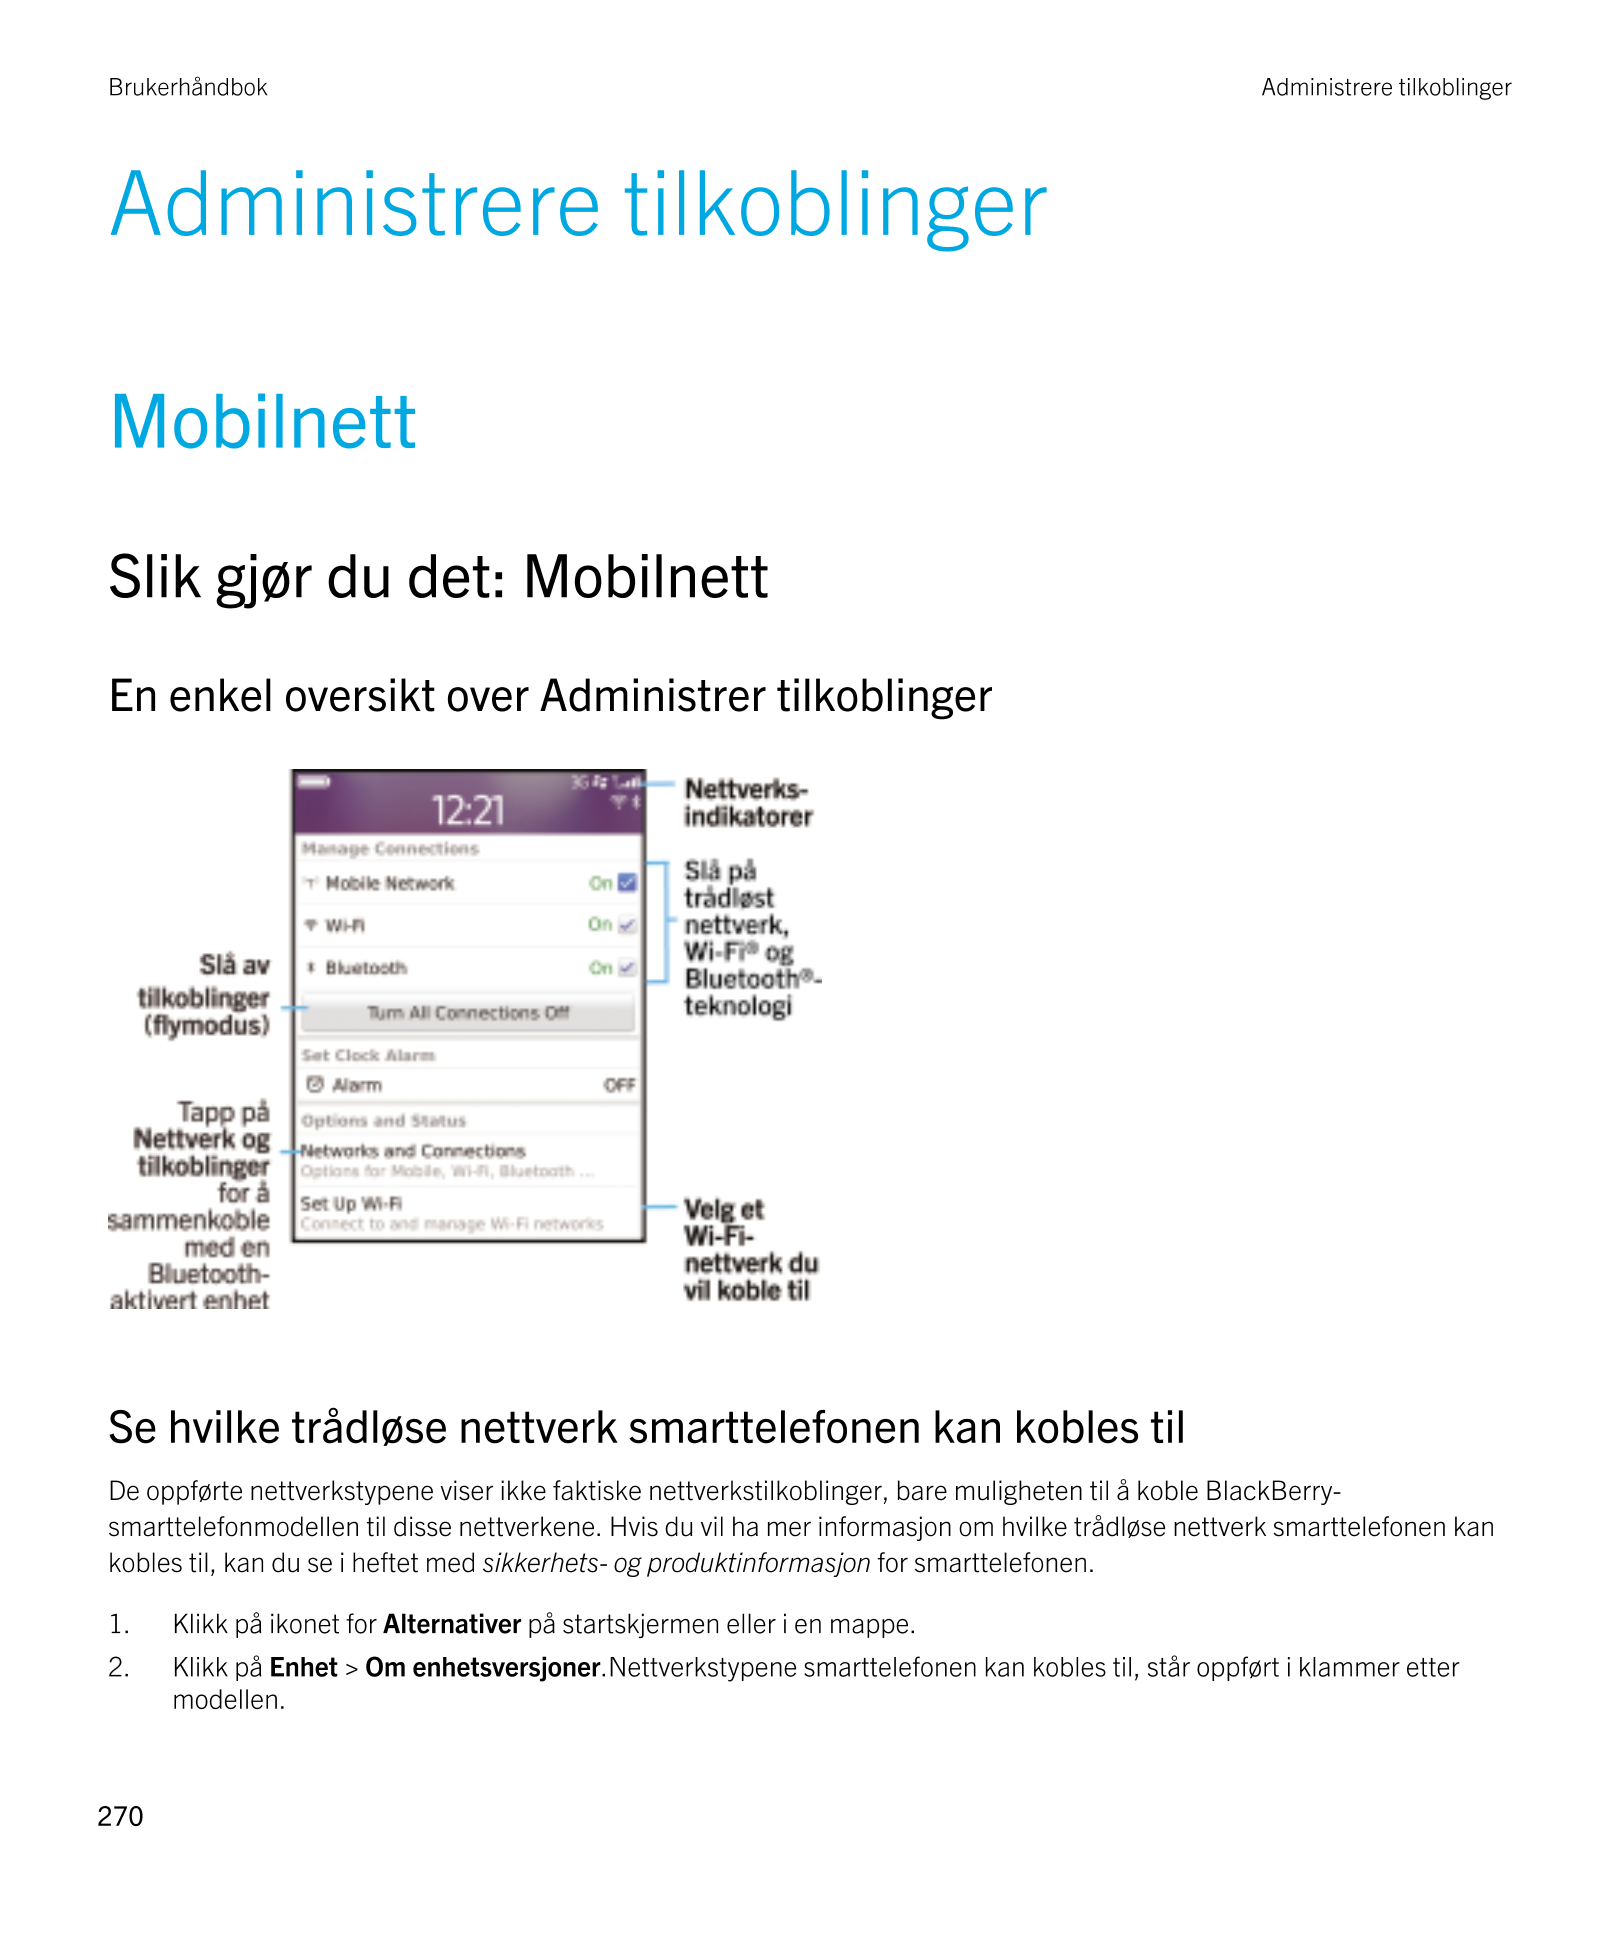 Brukerhåndbok Administrere tilkoblinger
Administrere tilkoblinger
Mobilnett
Slik gjør du det: Mobilnett
En enkel oversikt over A